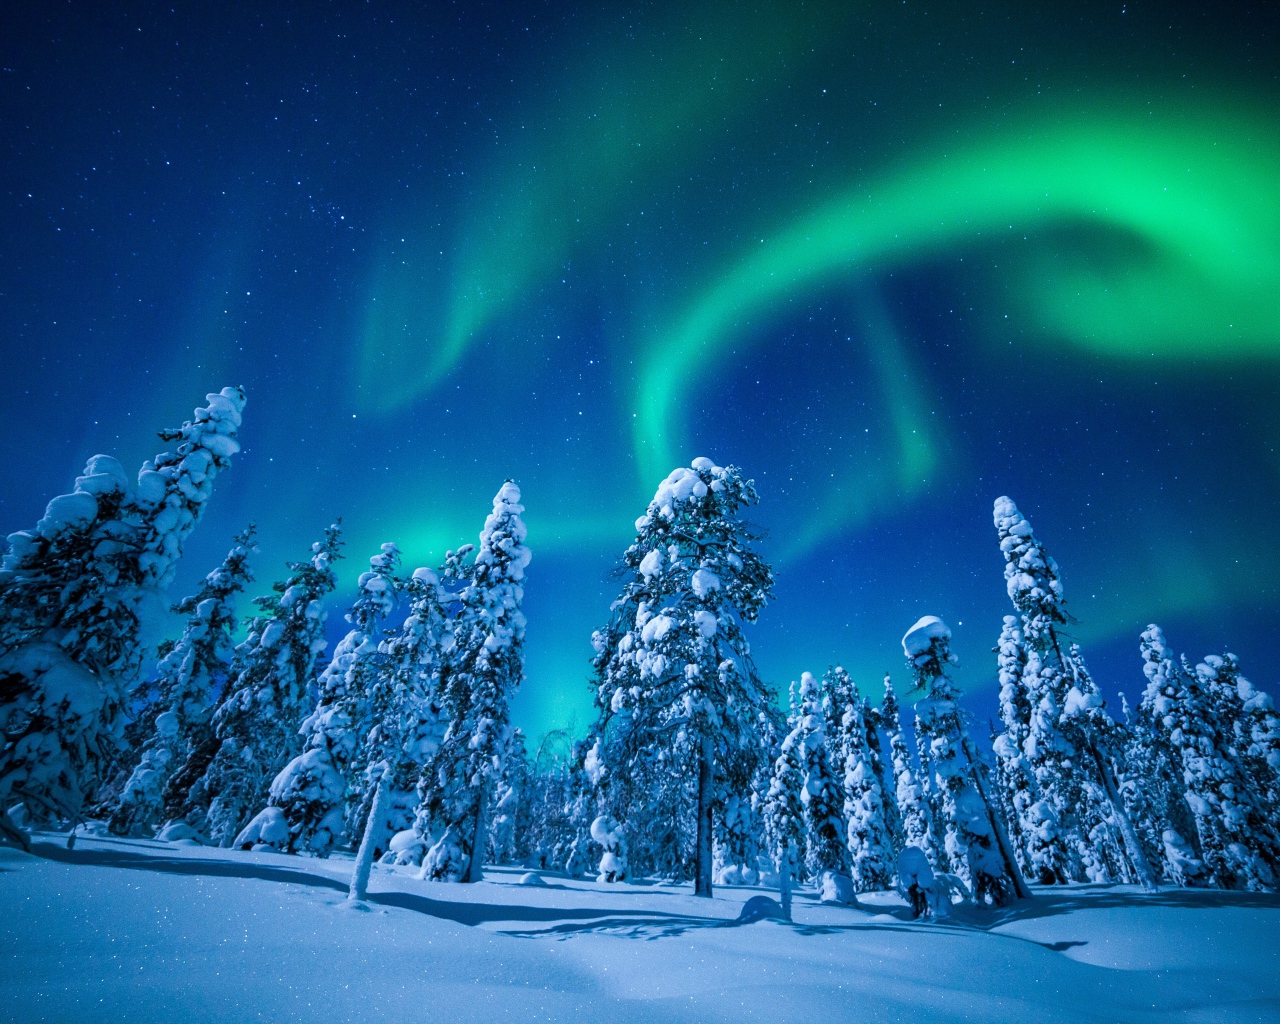 Северное сияние в небе над покрытыми снегом елями, Финляндия